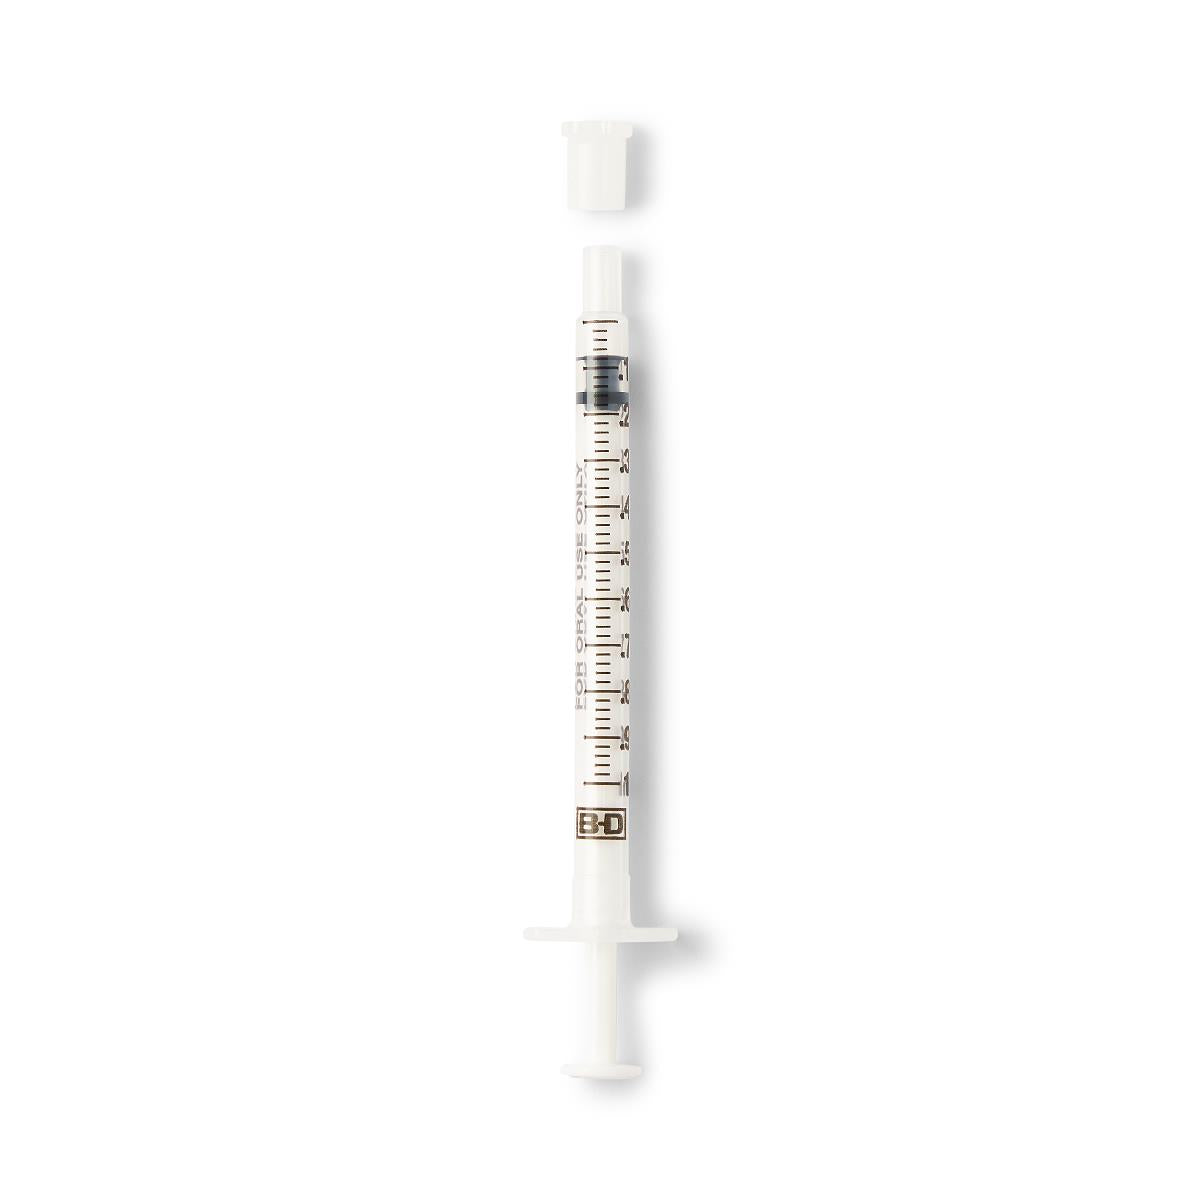 1mL Syringe Only —